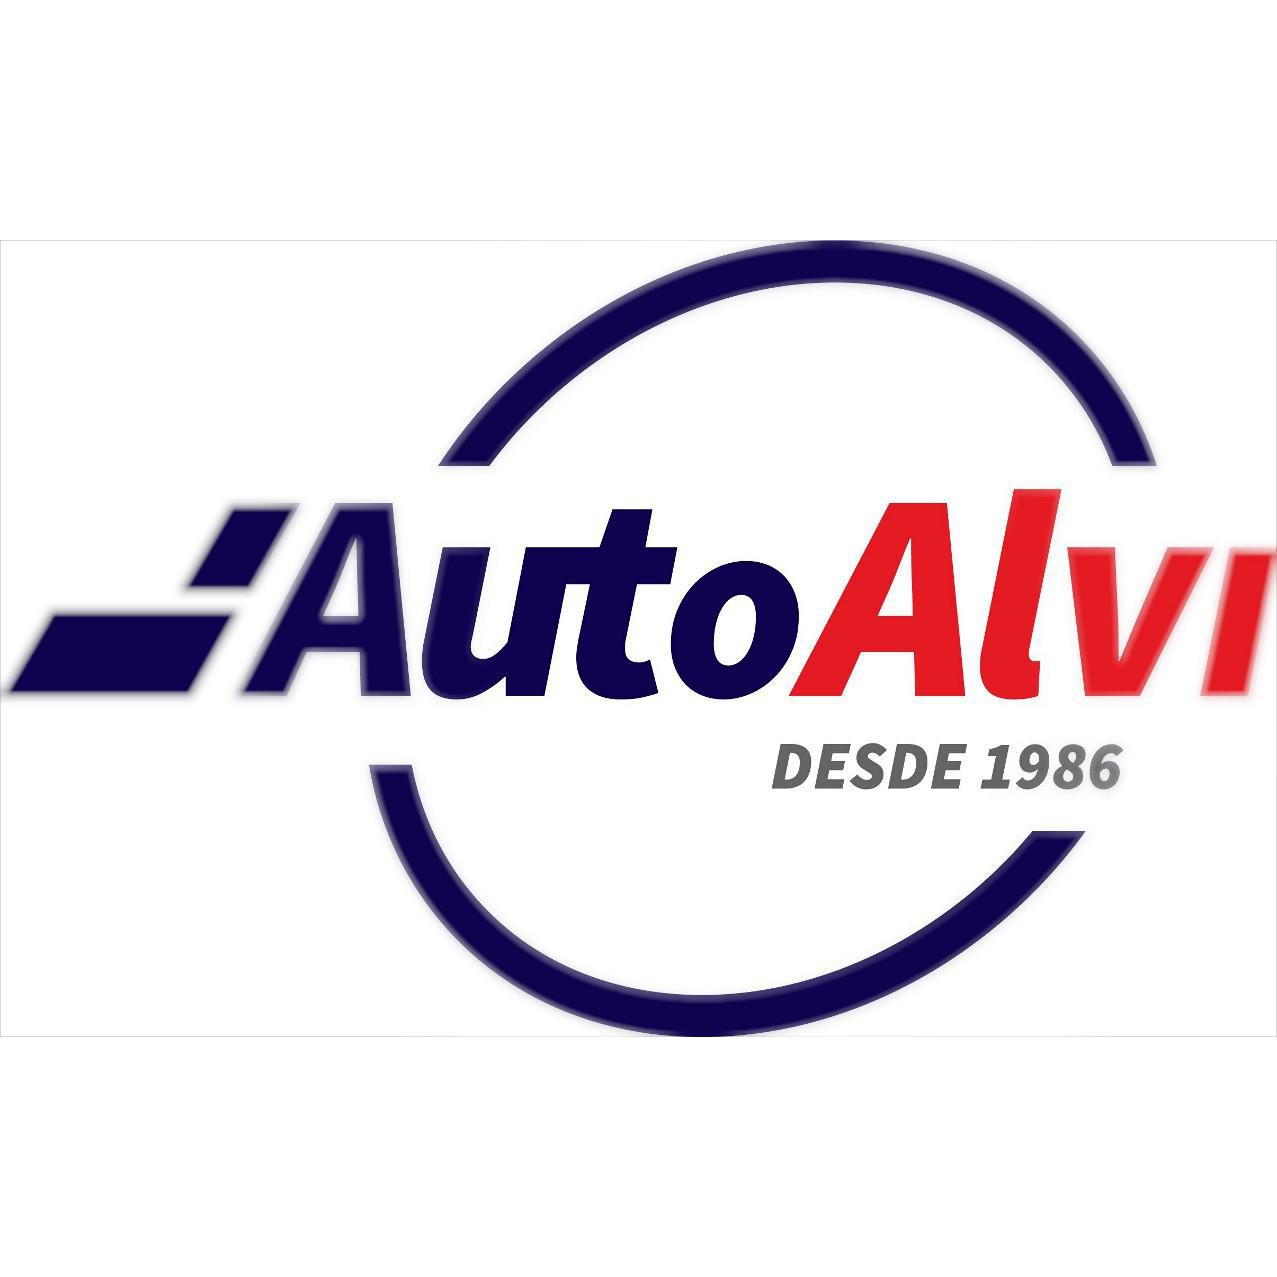 Auto AL-VI Valencia